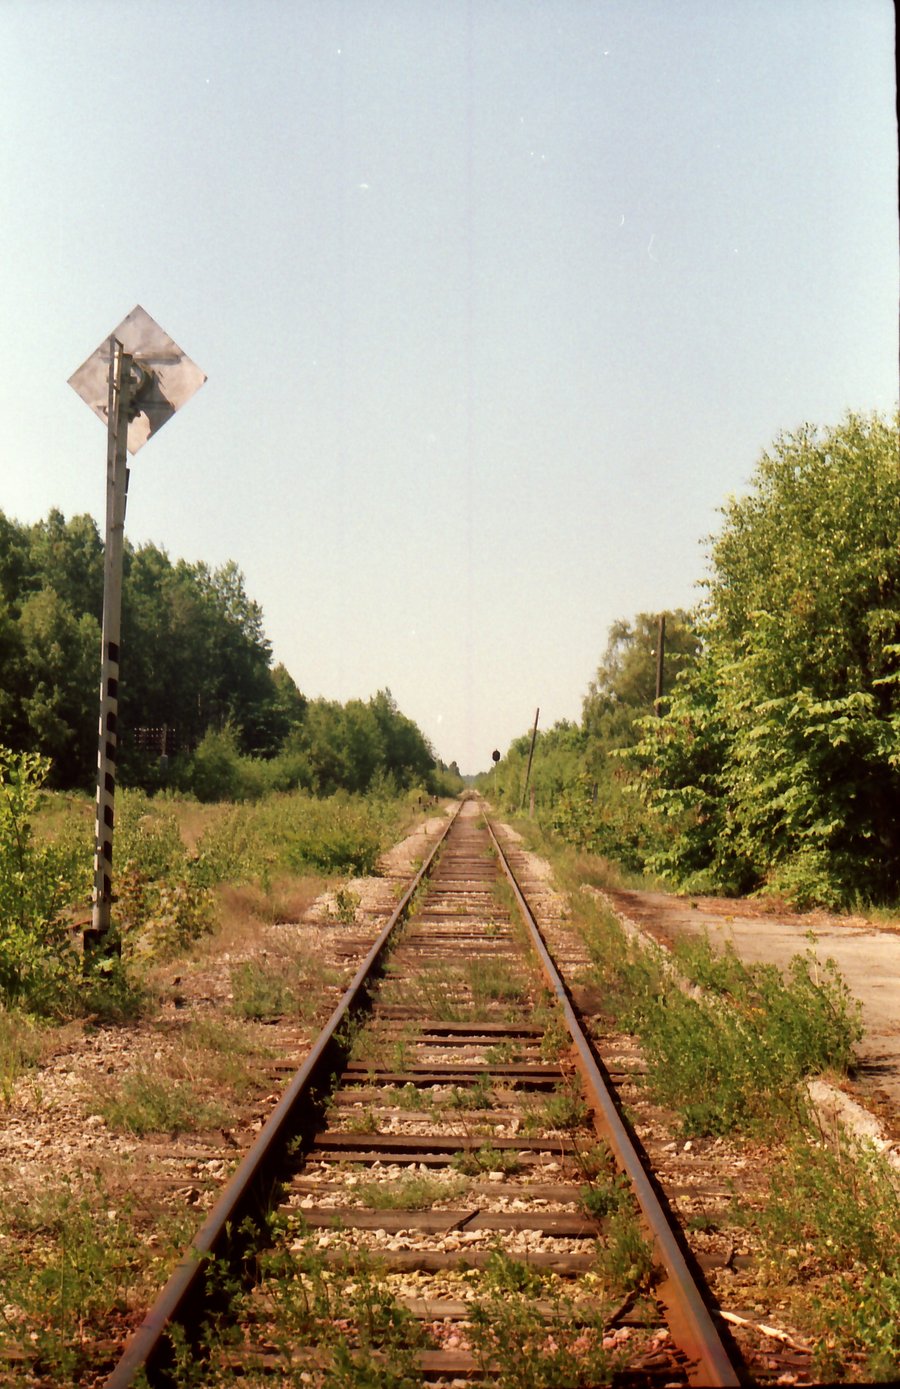 Turba station
07.2001
